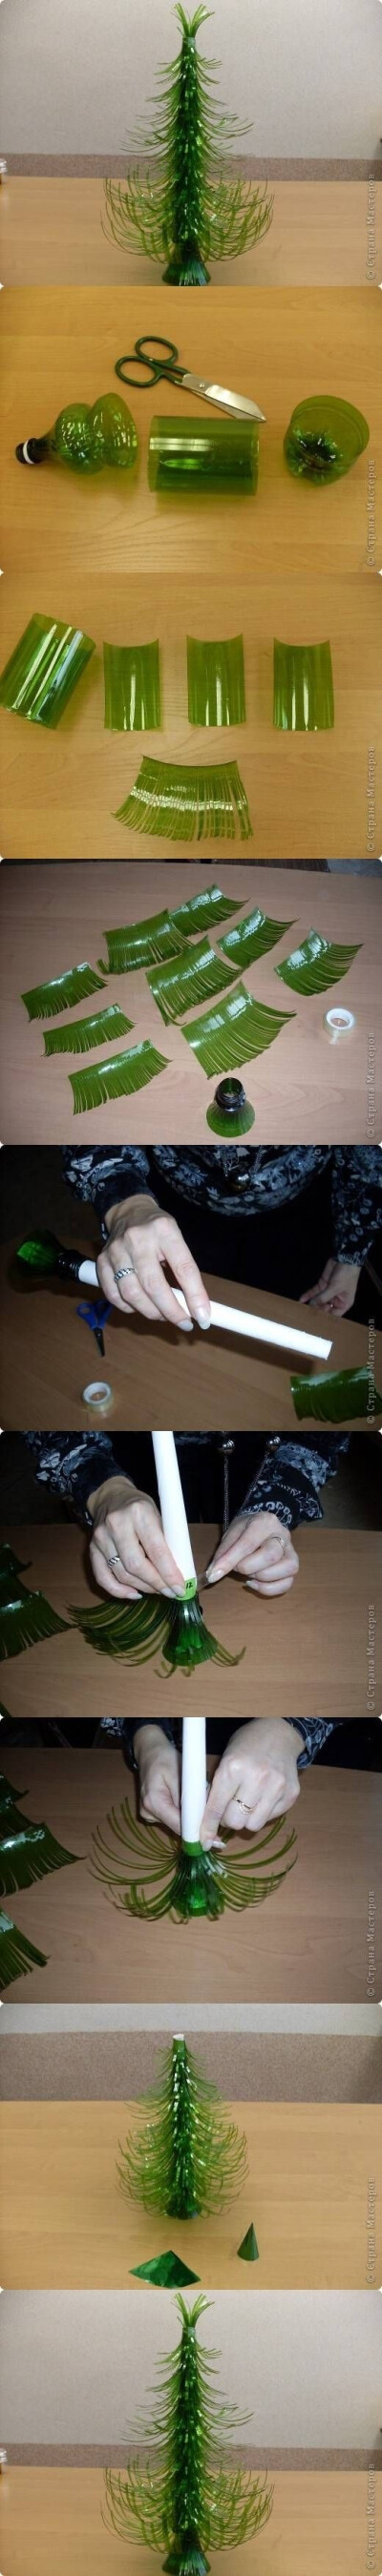 塑料瓶创意小手工